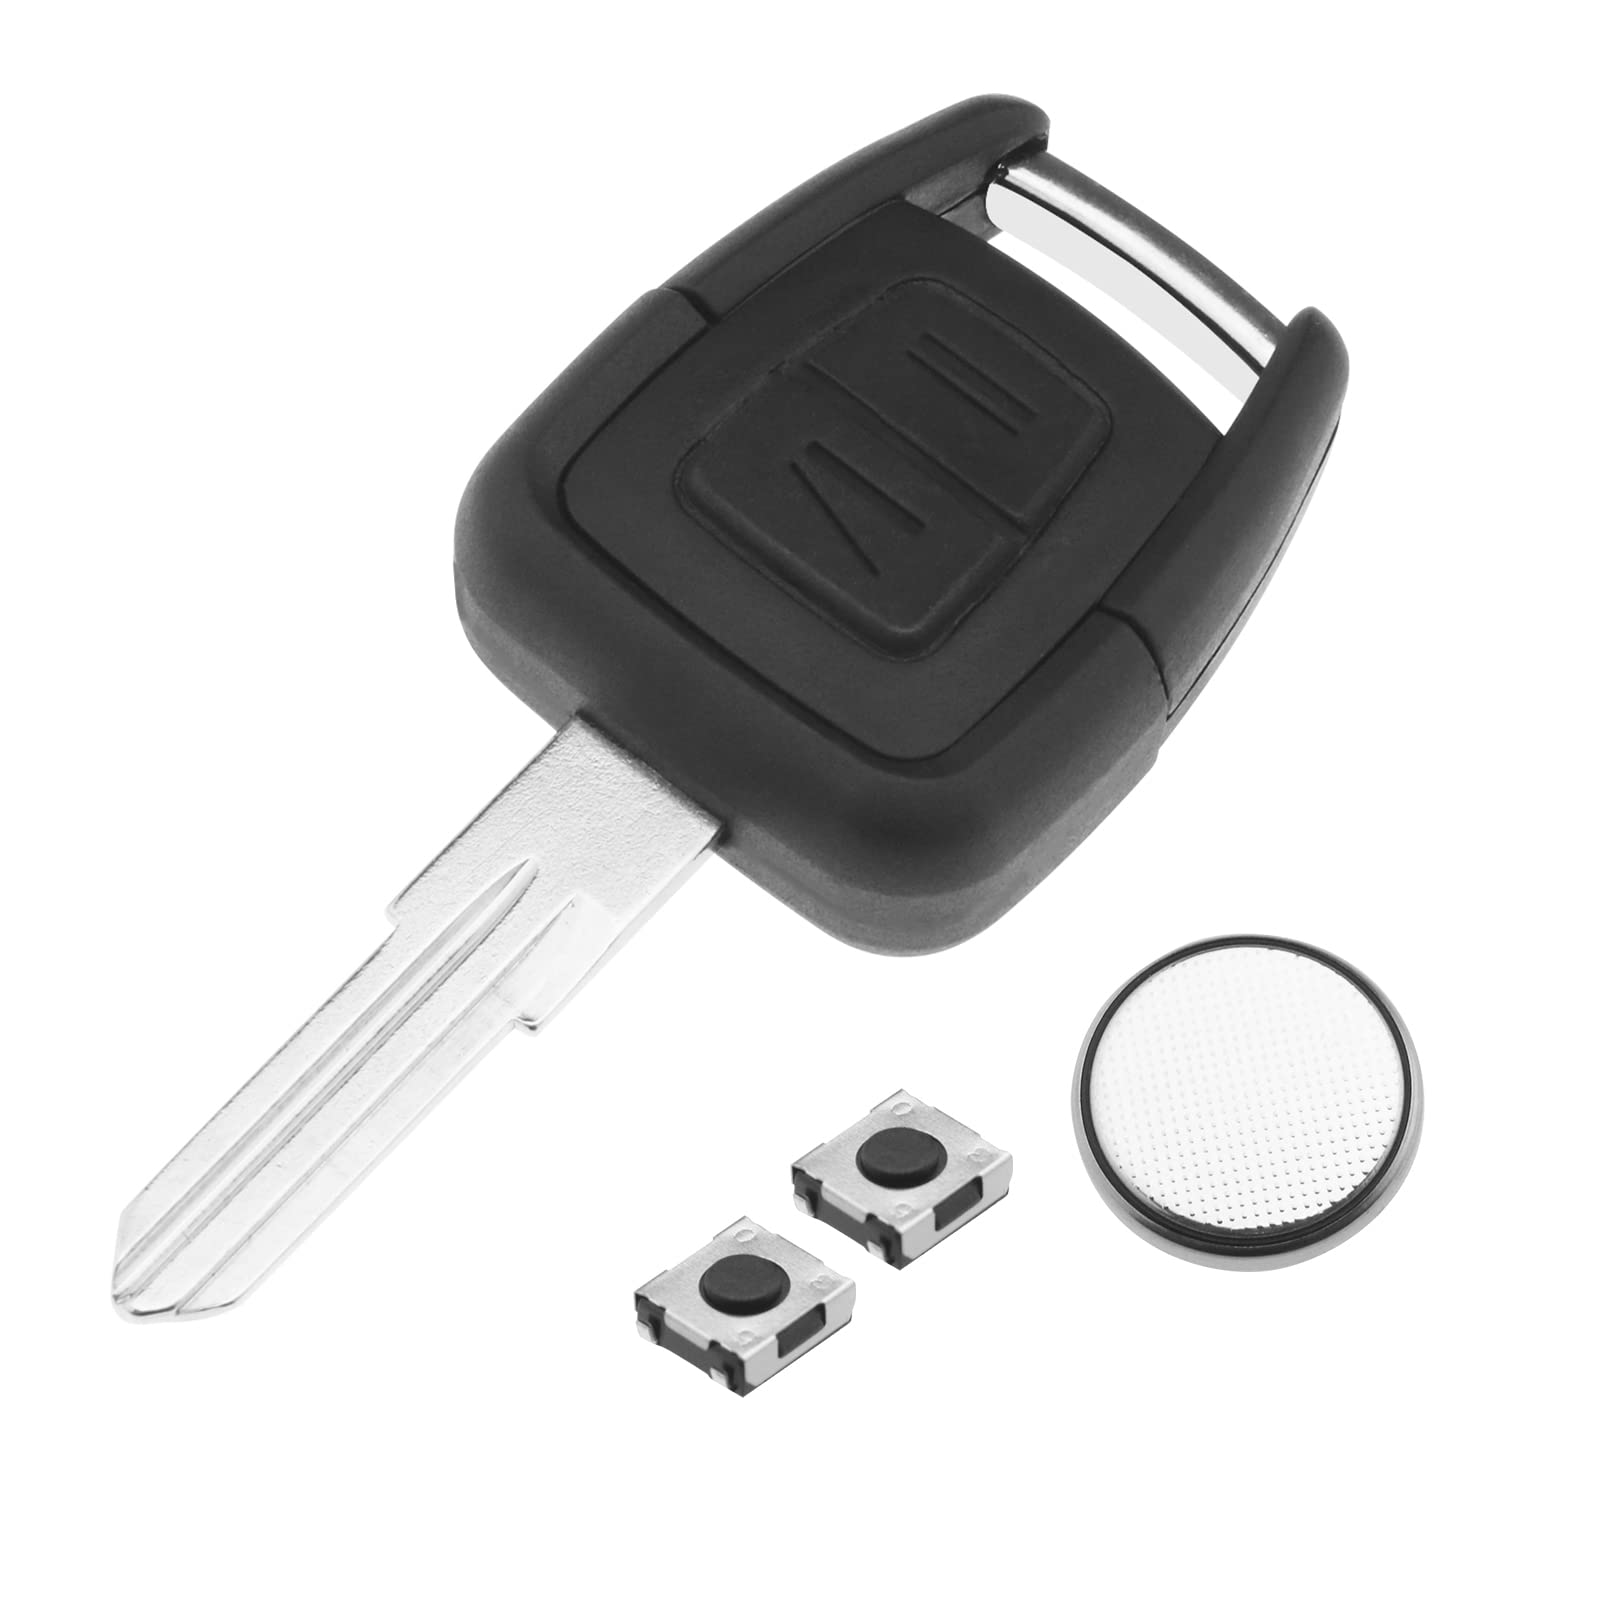 2 Tasten Fernbedienung Schlüsselanhänger Gehäuse mit HU46 Schlüsselrohling SWC1 Touch Switches CR2032 Knopfzelle kompatibel mit Opel Astra Vectra Zafira von OTOTEC